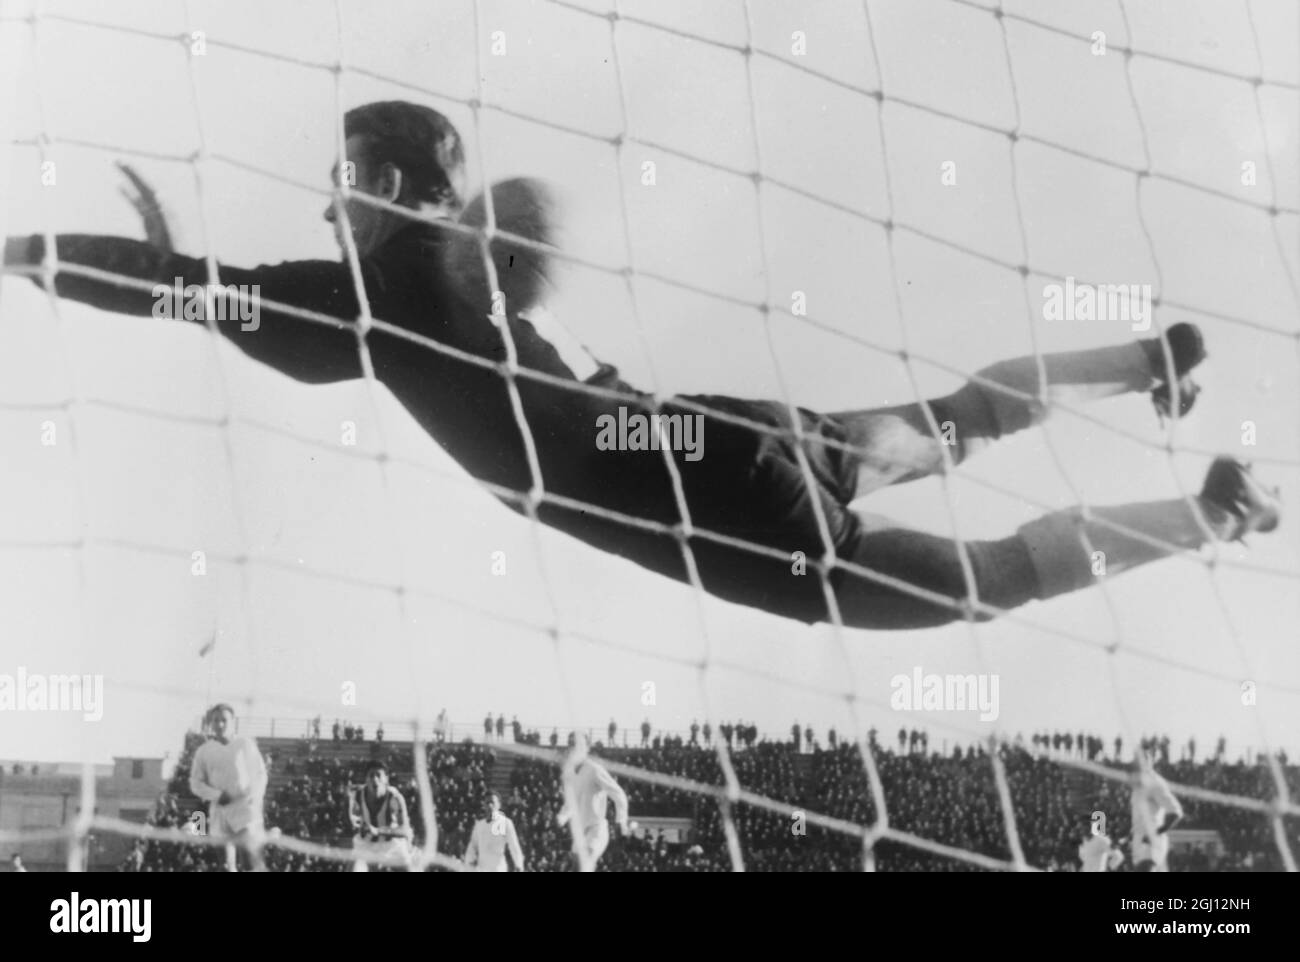 FUSSBALL-EUROPAMEISTERSCHAFT GRIECHISCH V CZECHSLOVAKIA GRIECHENLAND ERSTES TOR 24. NOVEMBER 1961 Stockfoto